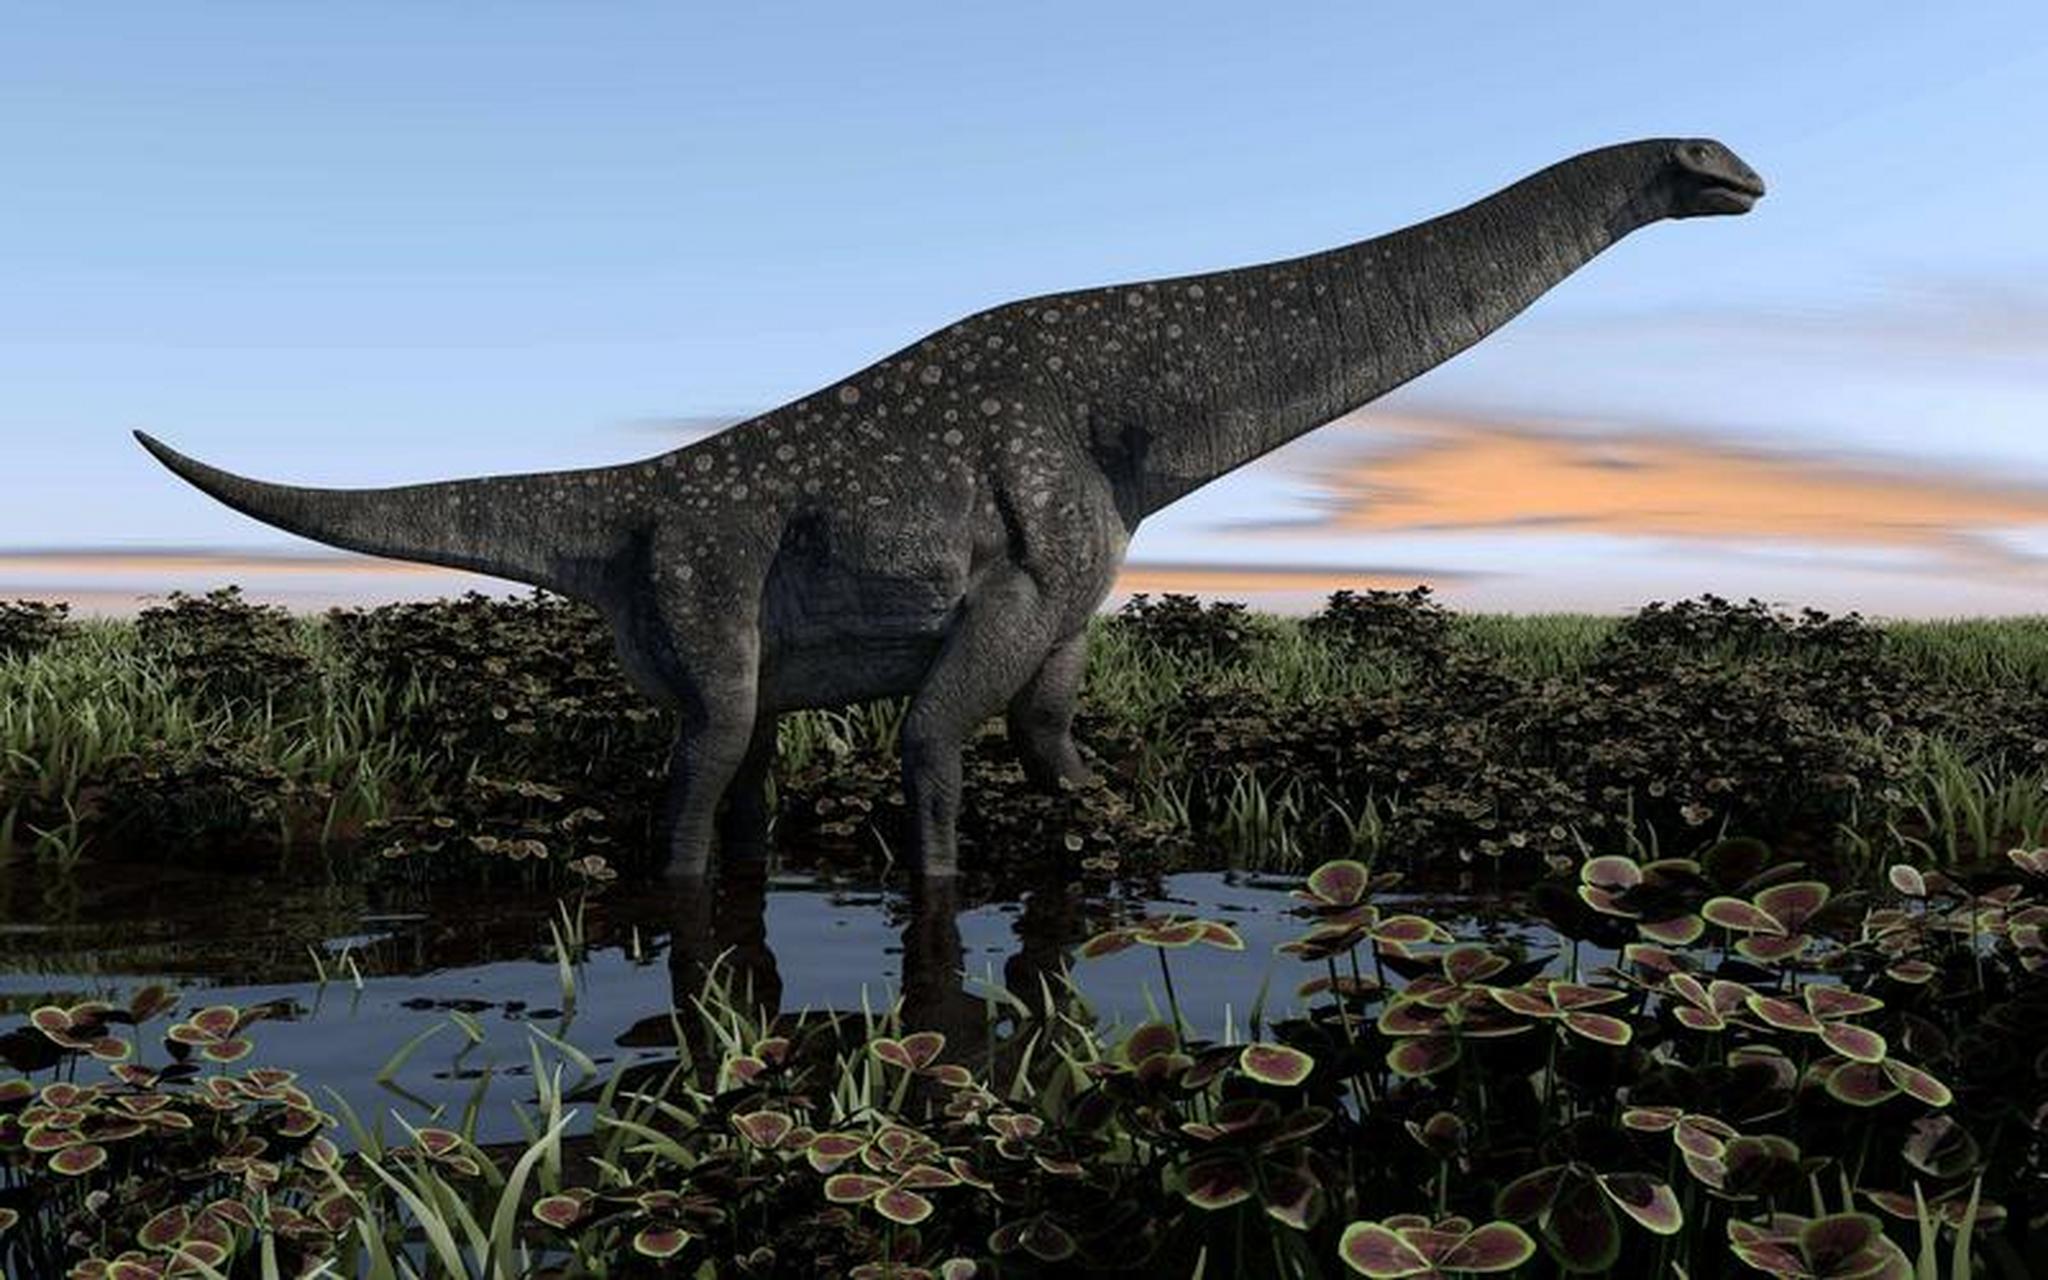 体型最庞大的食草恐龙之一——阿根廷龙         哇,这个大家伙真的是